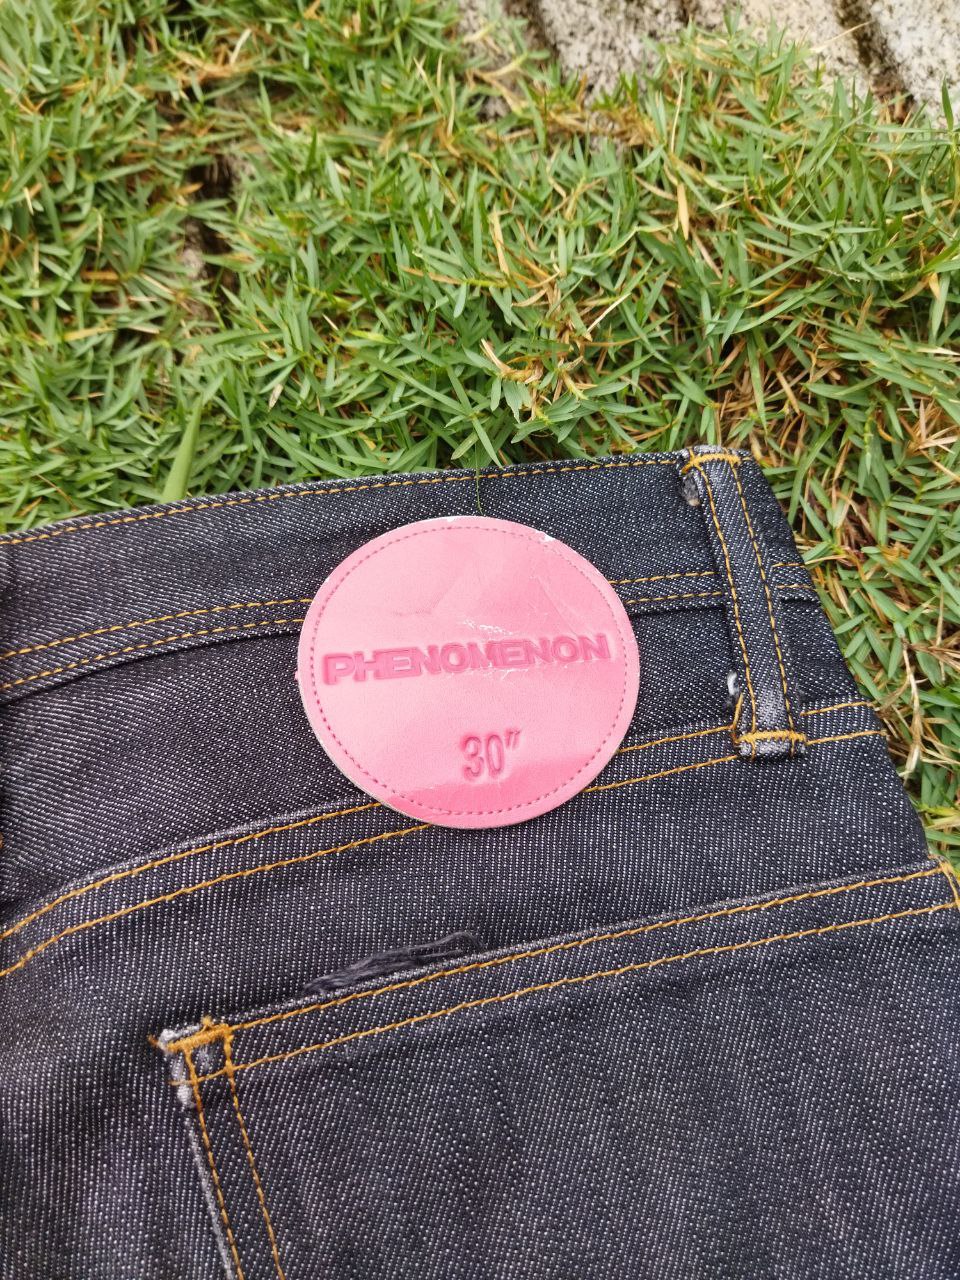 Phenomenon - Phenomenon Japan Indigo Skinny Jeans - 3